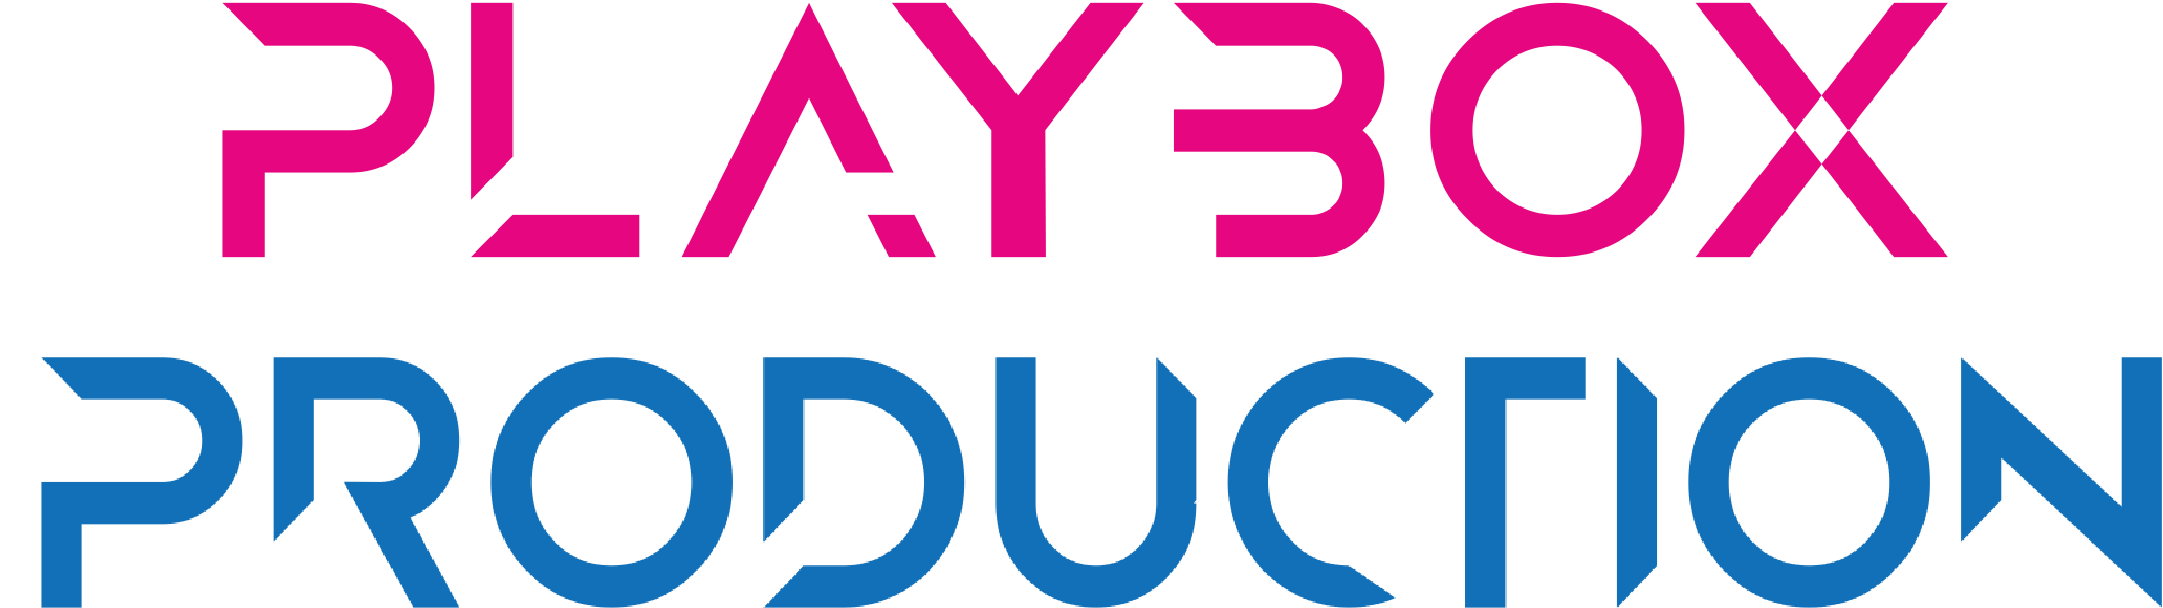 Playbox Production - udruga za promicanje filmske i video umjetnosti - Studentski.hr